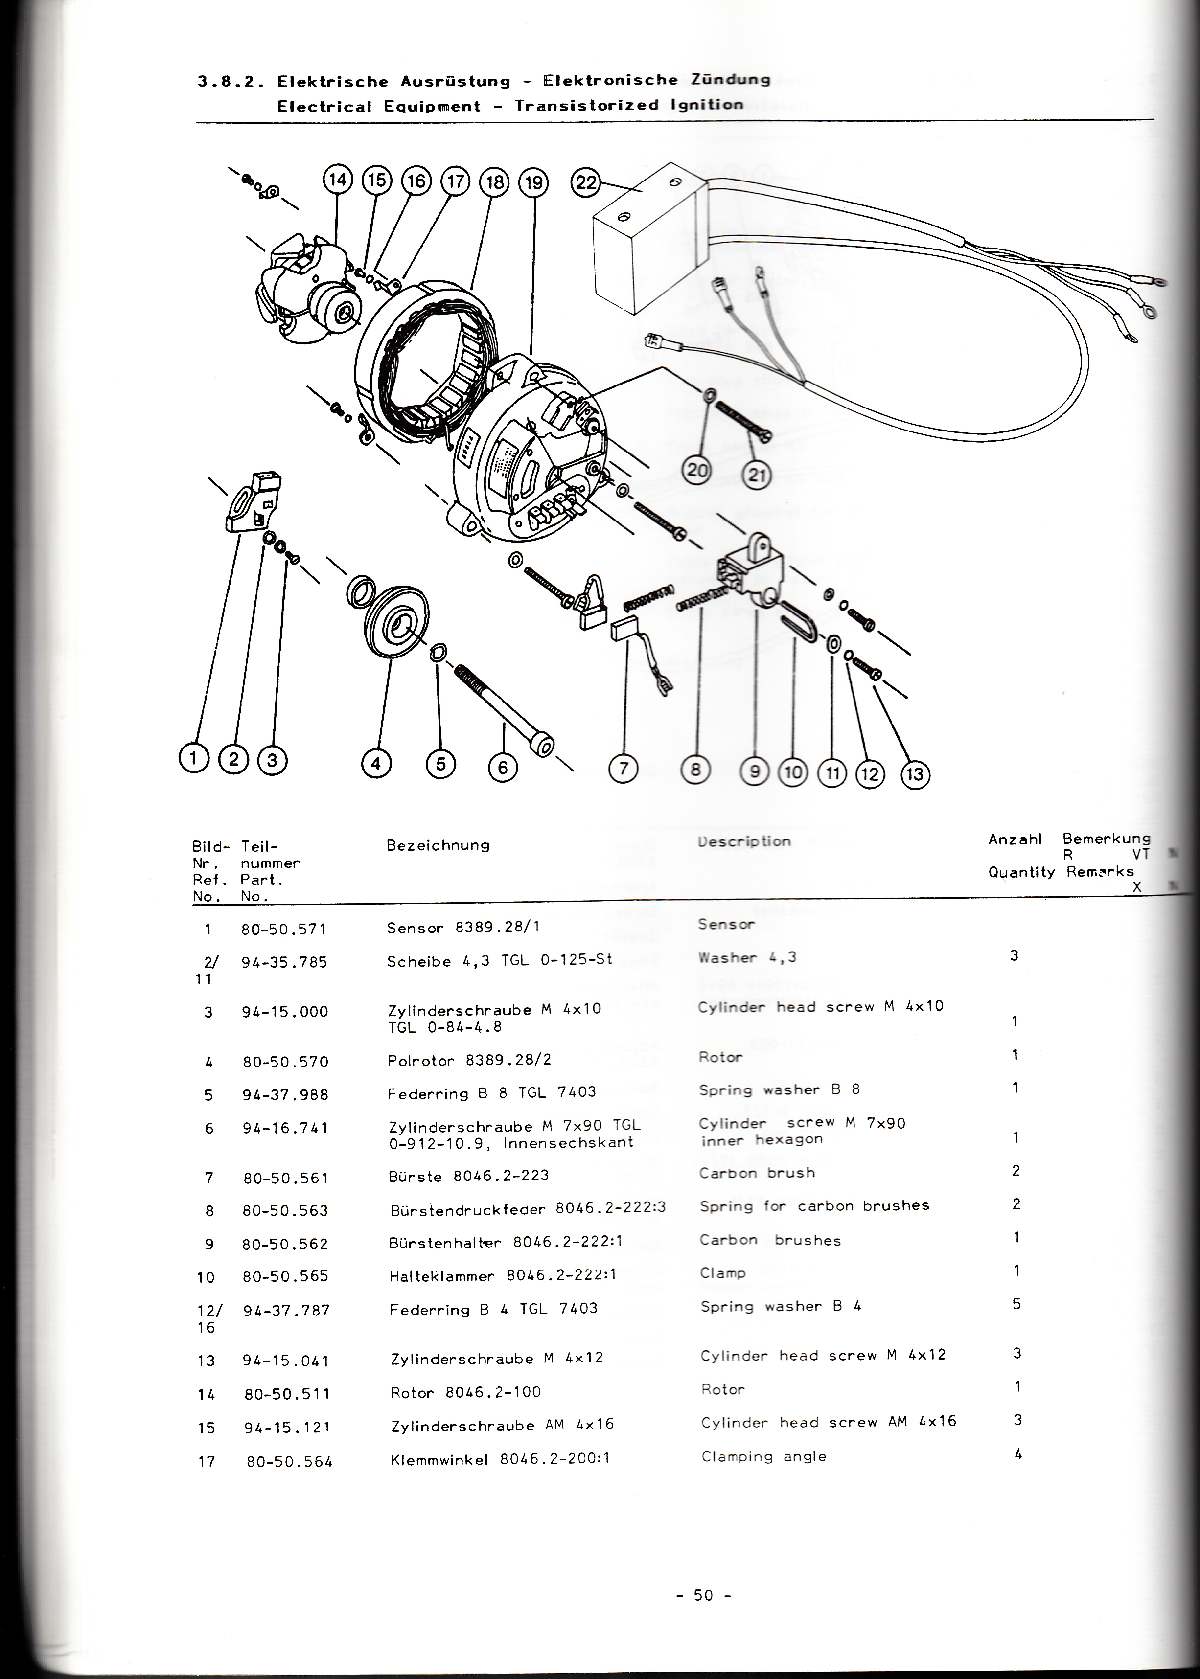 Katalog MZ 251 ETZ - 3.8.2. Elektrische Ausrüstung - Elektronische Zündung 